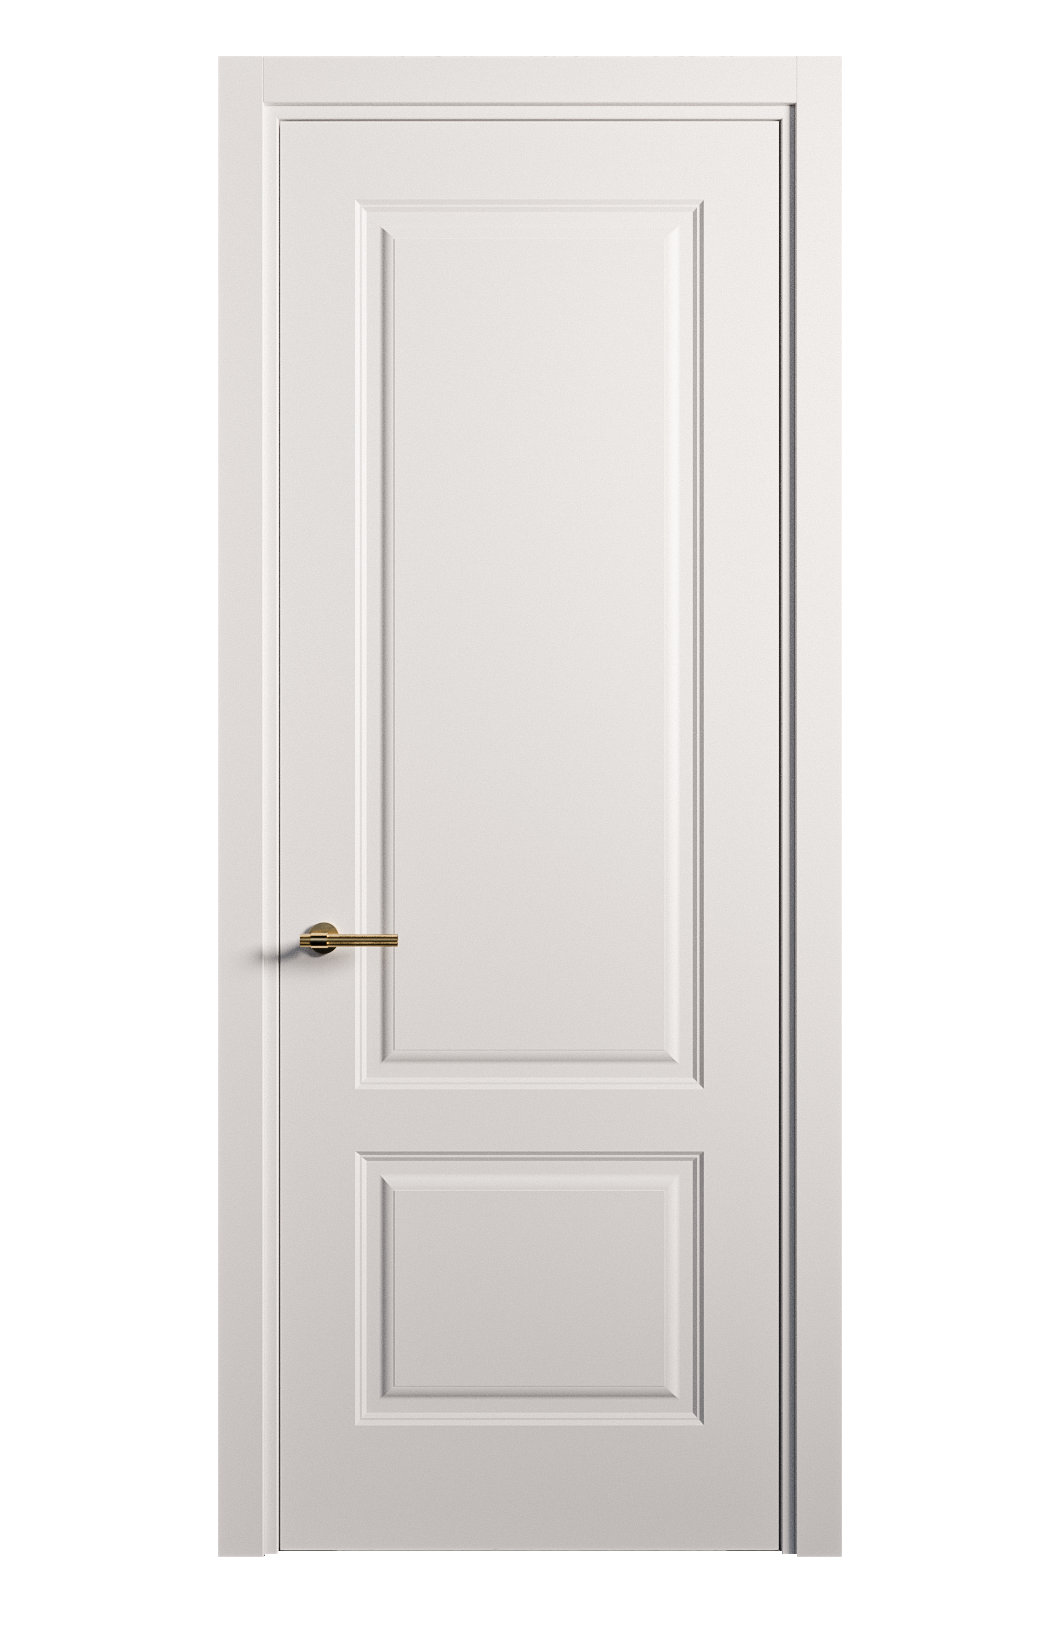 Межкомнатная дверь Вита-1 глухая эмаль ral 9003 26253